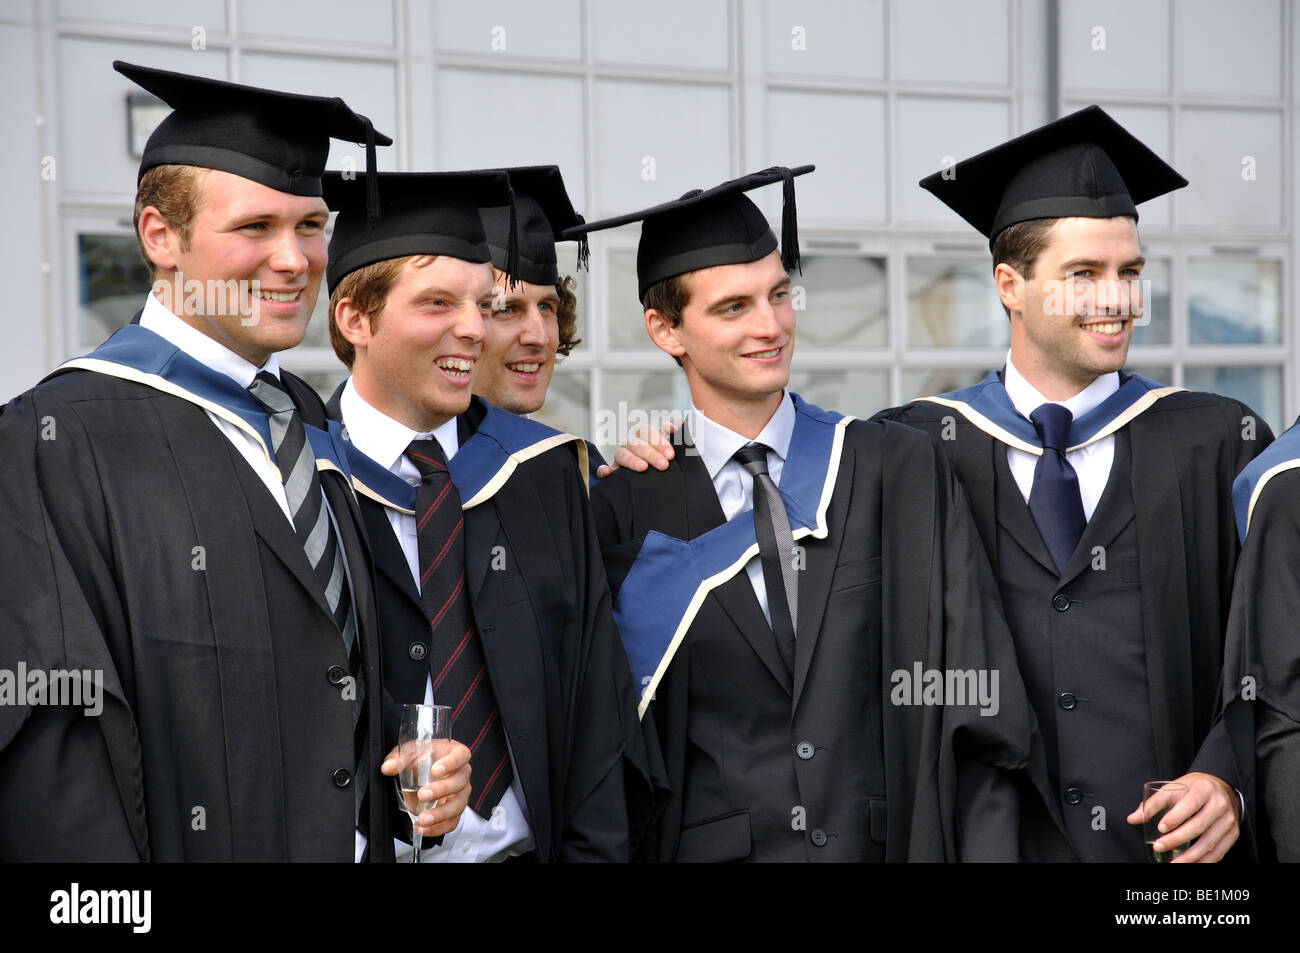 Männlichen Hochschulabsolventen bei Abschlussfeier, Oxford Brookes University, Headington, Oxfordshire, England, Vereinigtes Königreich Stockfoto